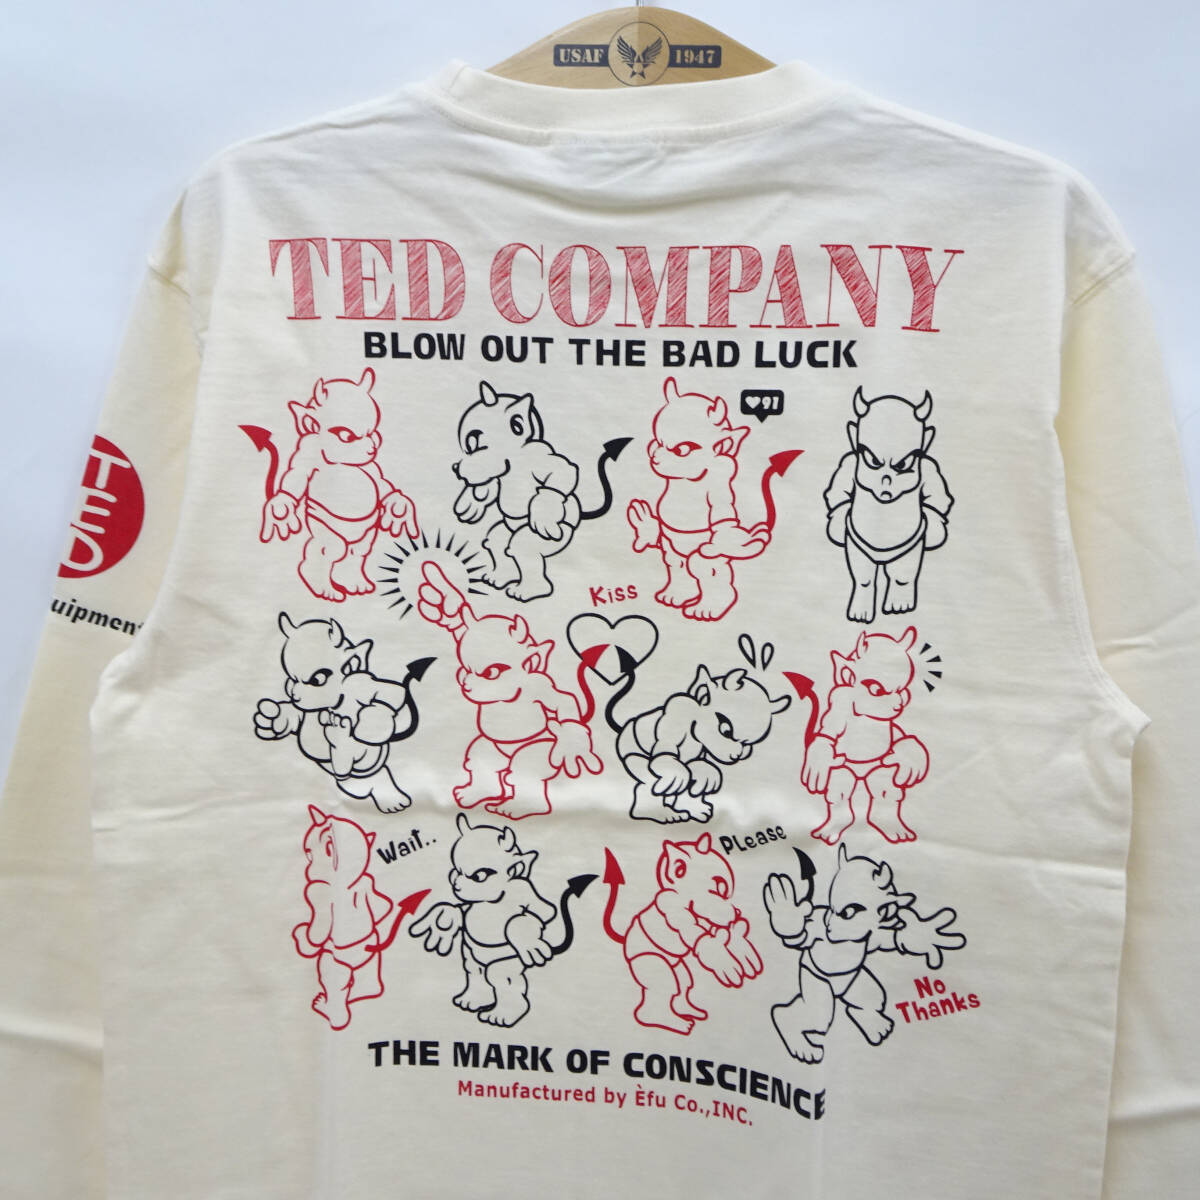 テッドマン 長袖Tシャツ TEDMAN ロンT イラストテディ エフ商会 TDLS-345 オフ白 40(M) 多少汚れあり 50%オフ (半額) 送料無料 即決 新品_画像4